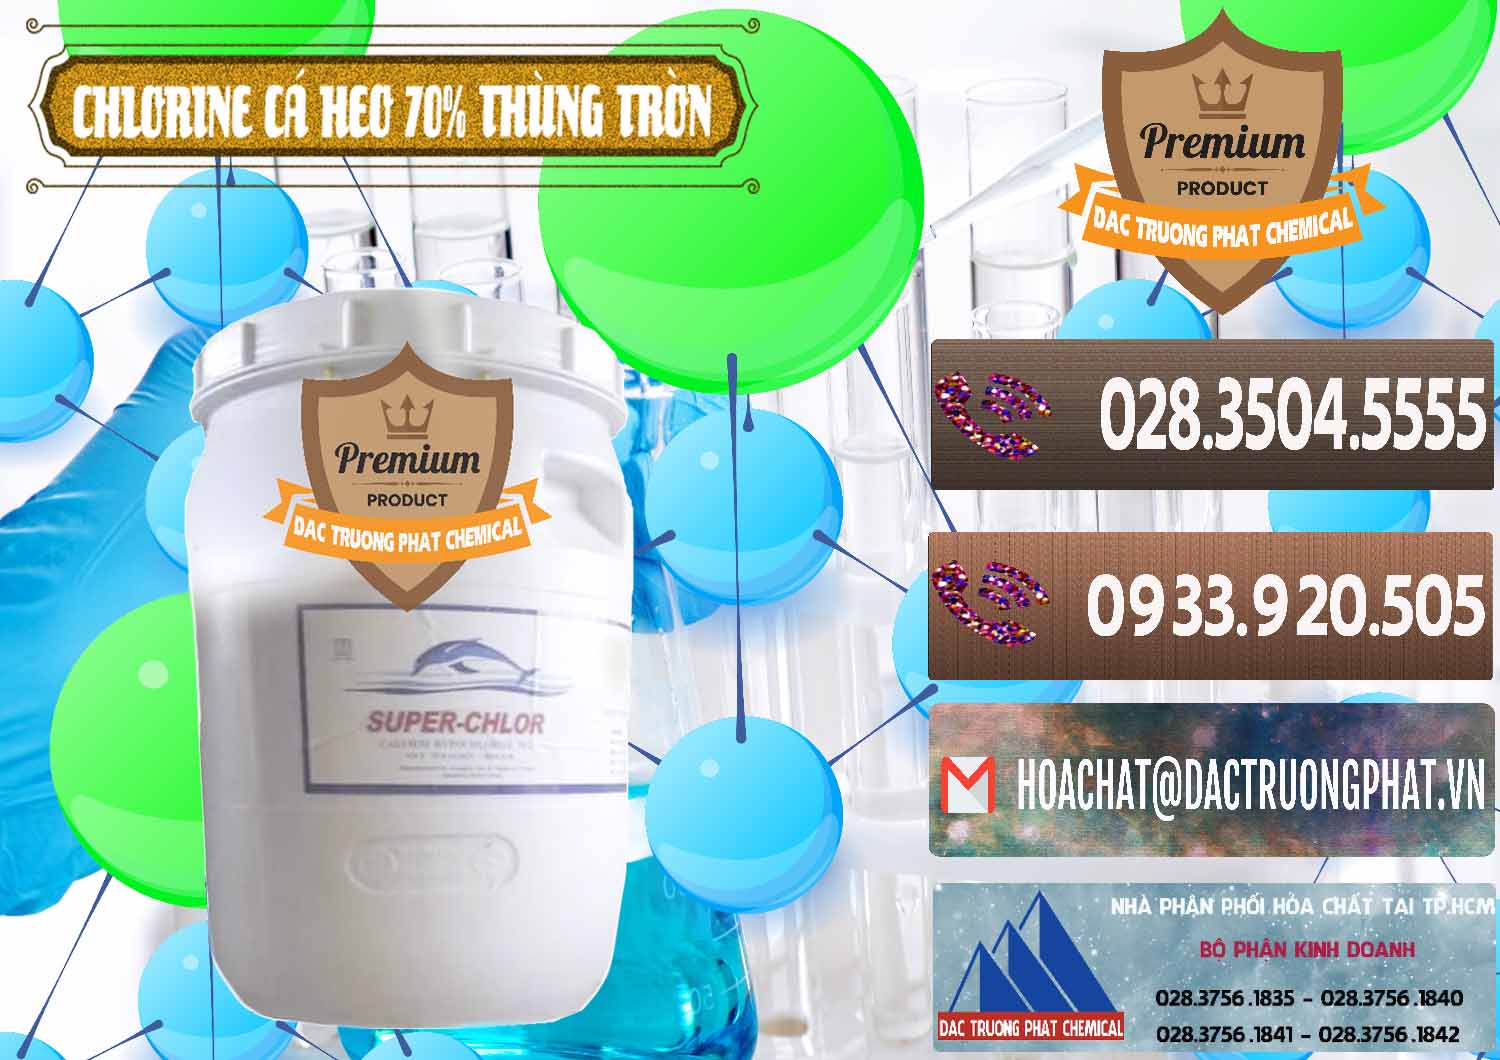 Cty cung cấp & bán Clorin - Chlorine Cá Heo 70% Super Chlor Thùng Tròn Nắp Trắng Trung Quốc China - 0239 - Công ty bán và phân phối hóa chất tại TP.HCM - hoachatviet.net